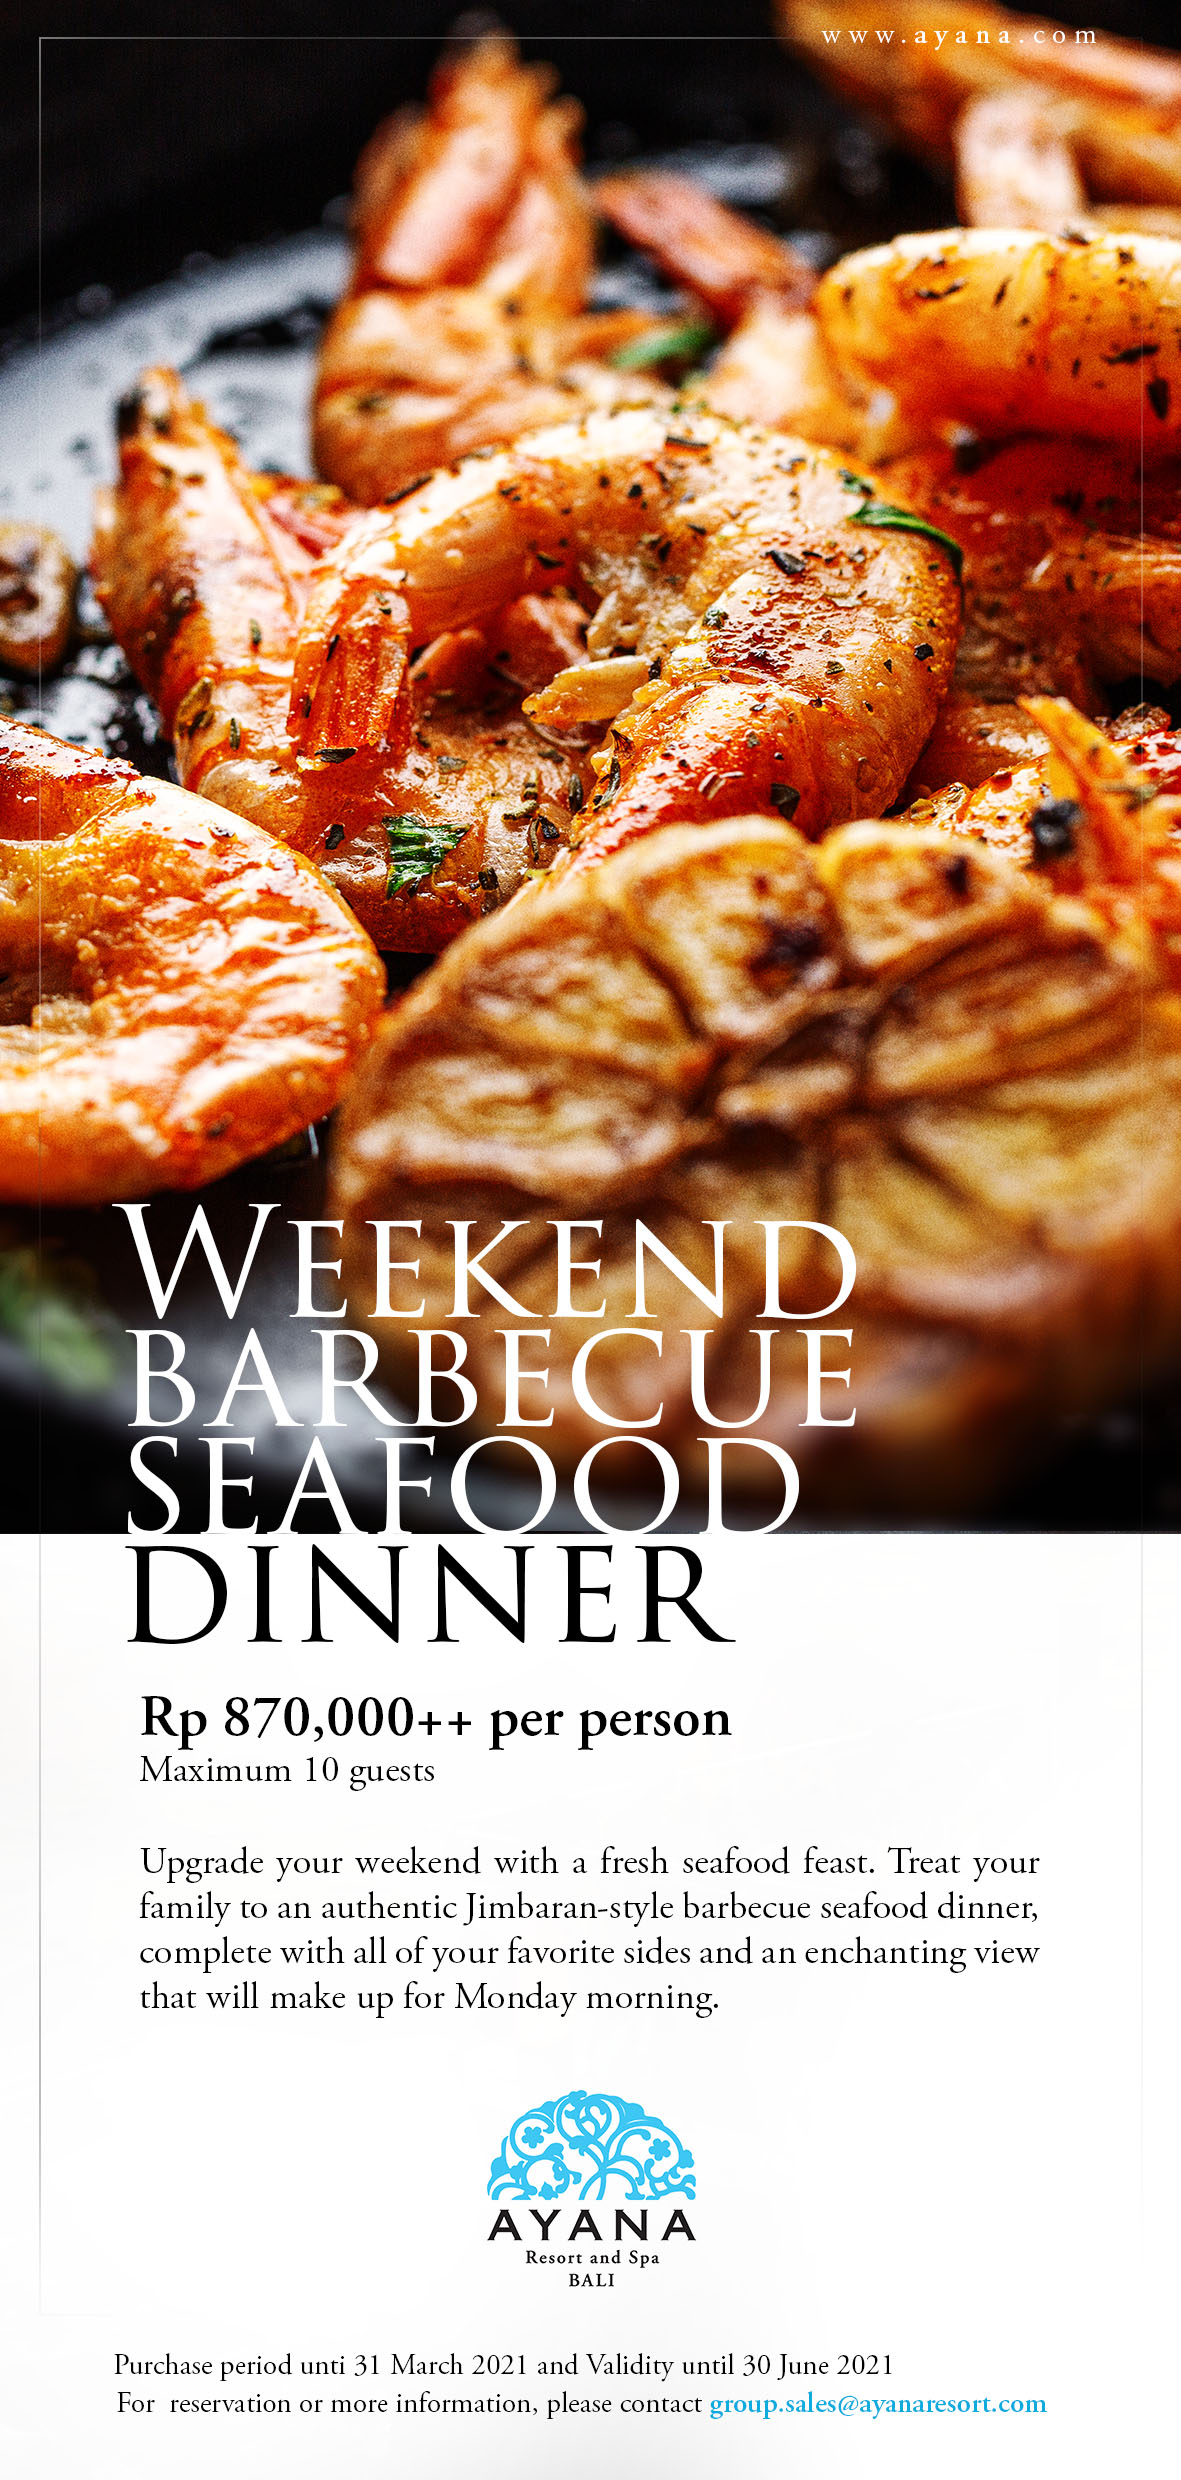 AYANA_Weekend_BBQ_Seafood_Dinner.jpg